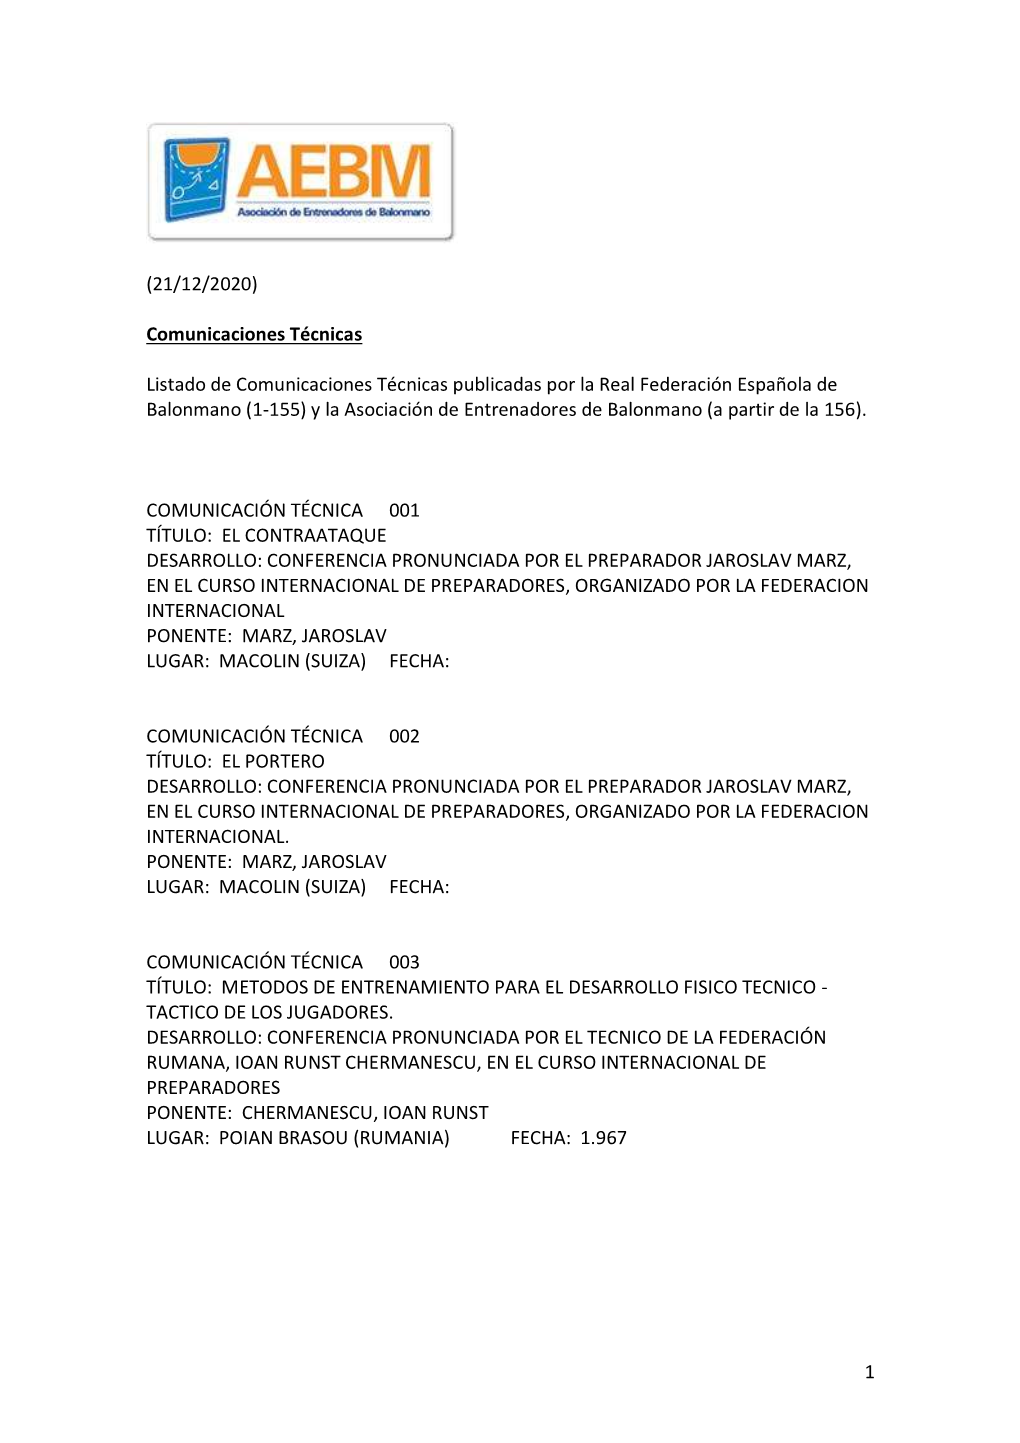 Listado De Comunicaciones Técnicas Publicadas Por La Real Federación Española De Balonmano (1-155) Y La Asociación De Entrenadores De Balonmano (A Partir De La 156)